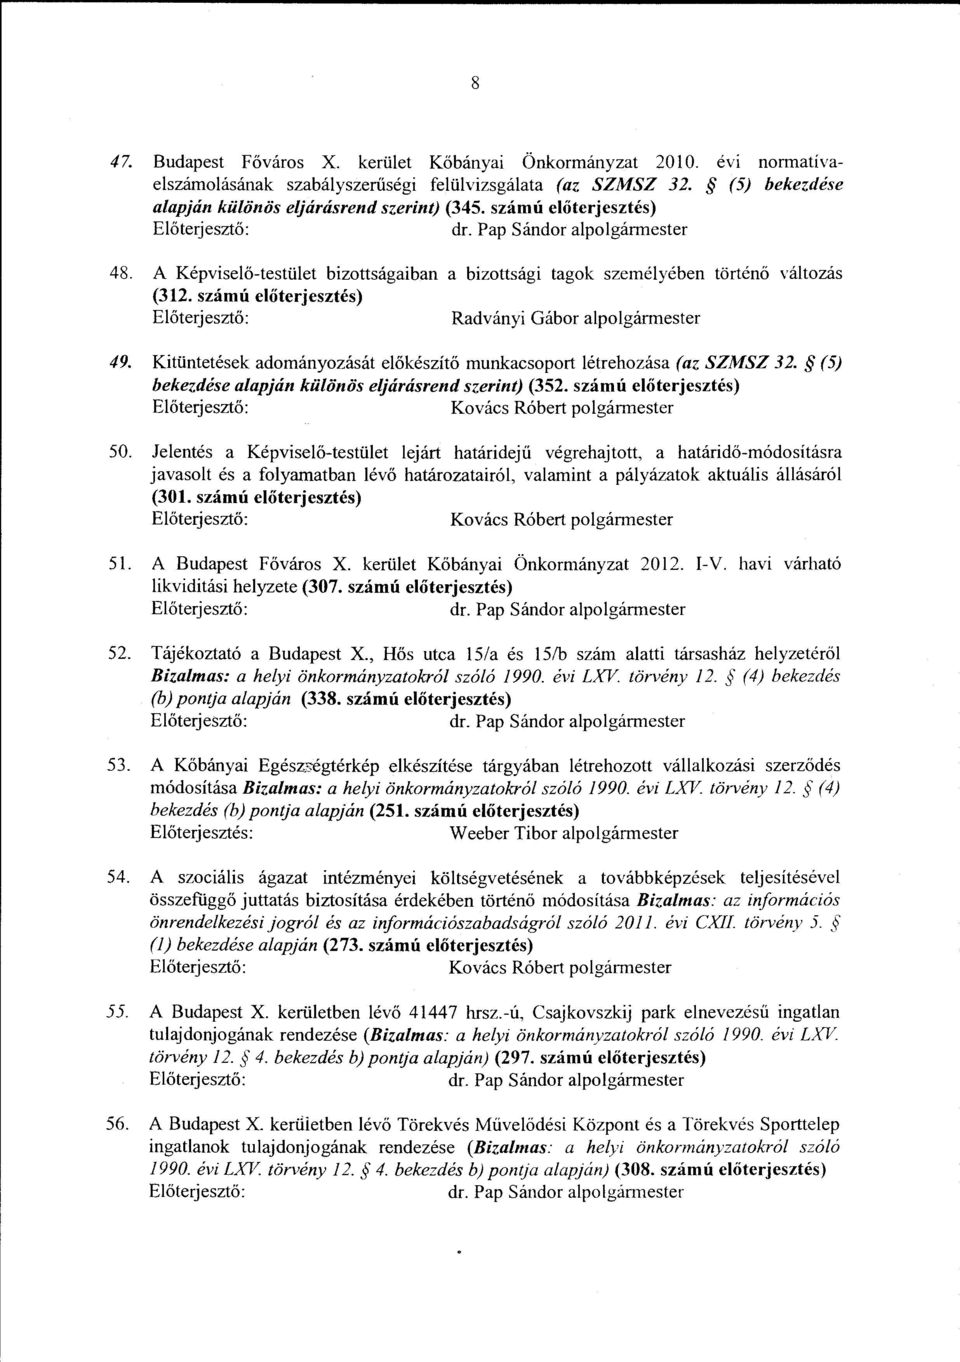 Kitüntetések adományozását előkészítő munkacsoport létrehozása (az SZMSZ 32. (5) bekezdése alapjánkülönös eljárásrend szerint) (352. számú előterjesztés) Kovács Róbert polgármester 50.